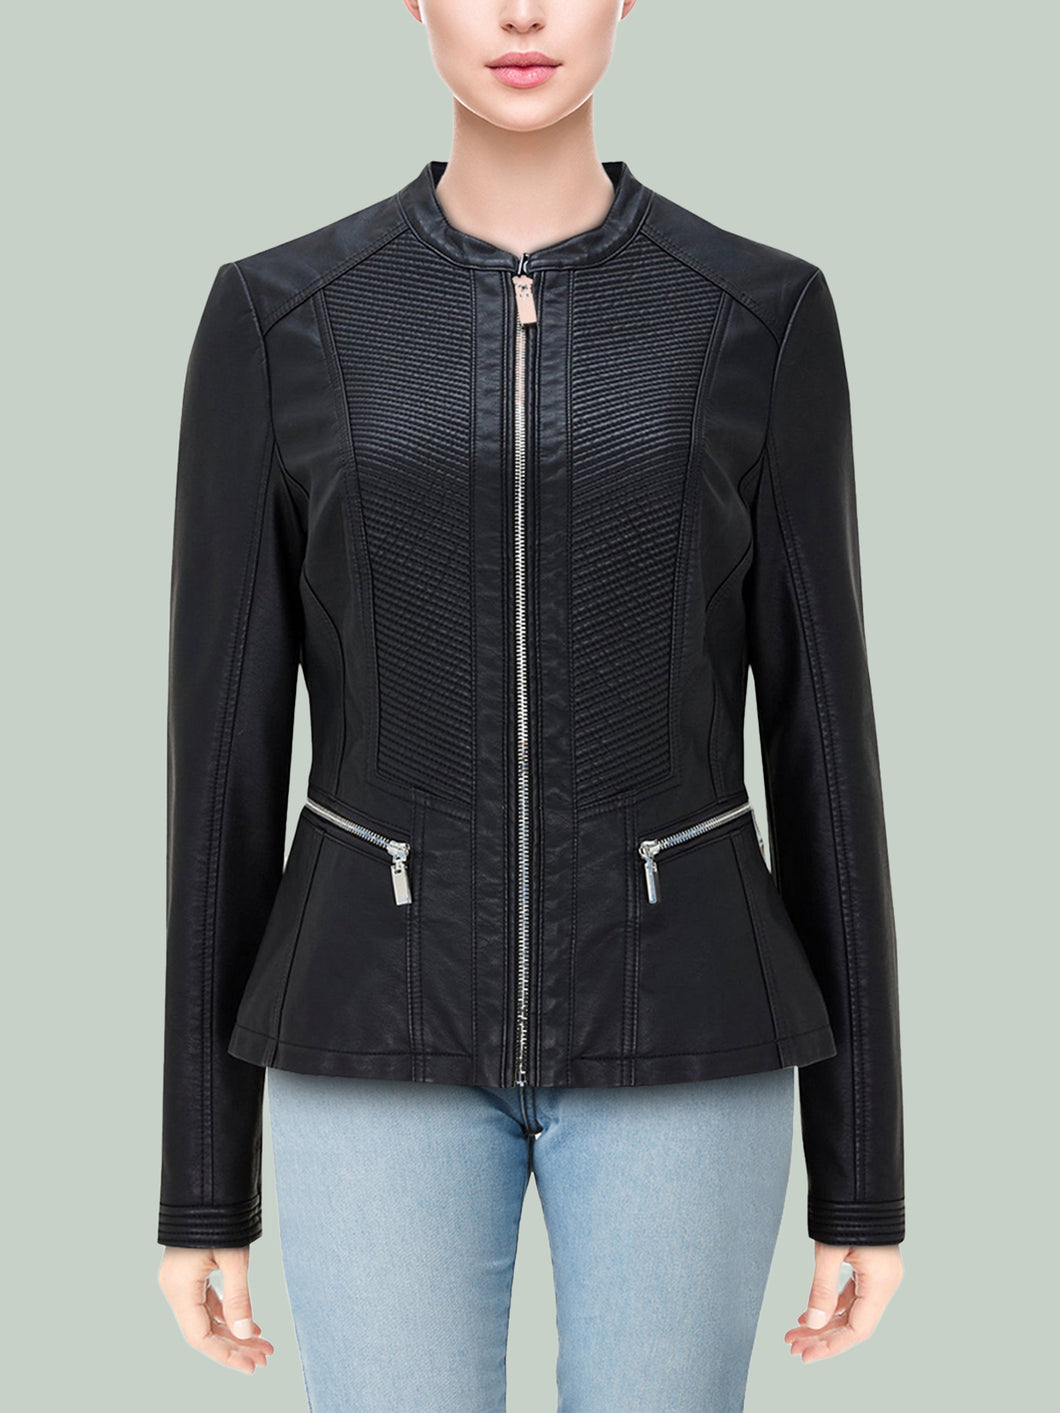 Women's Black Faux Leather Jacket